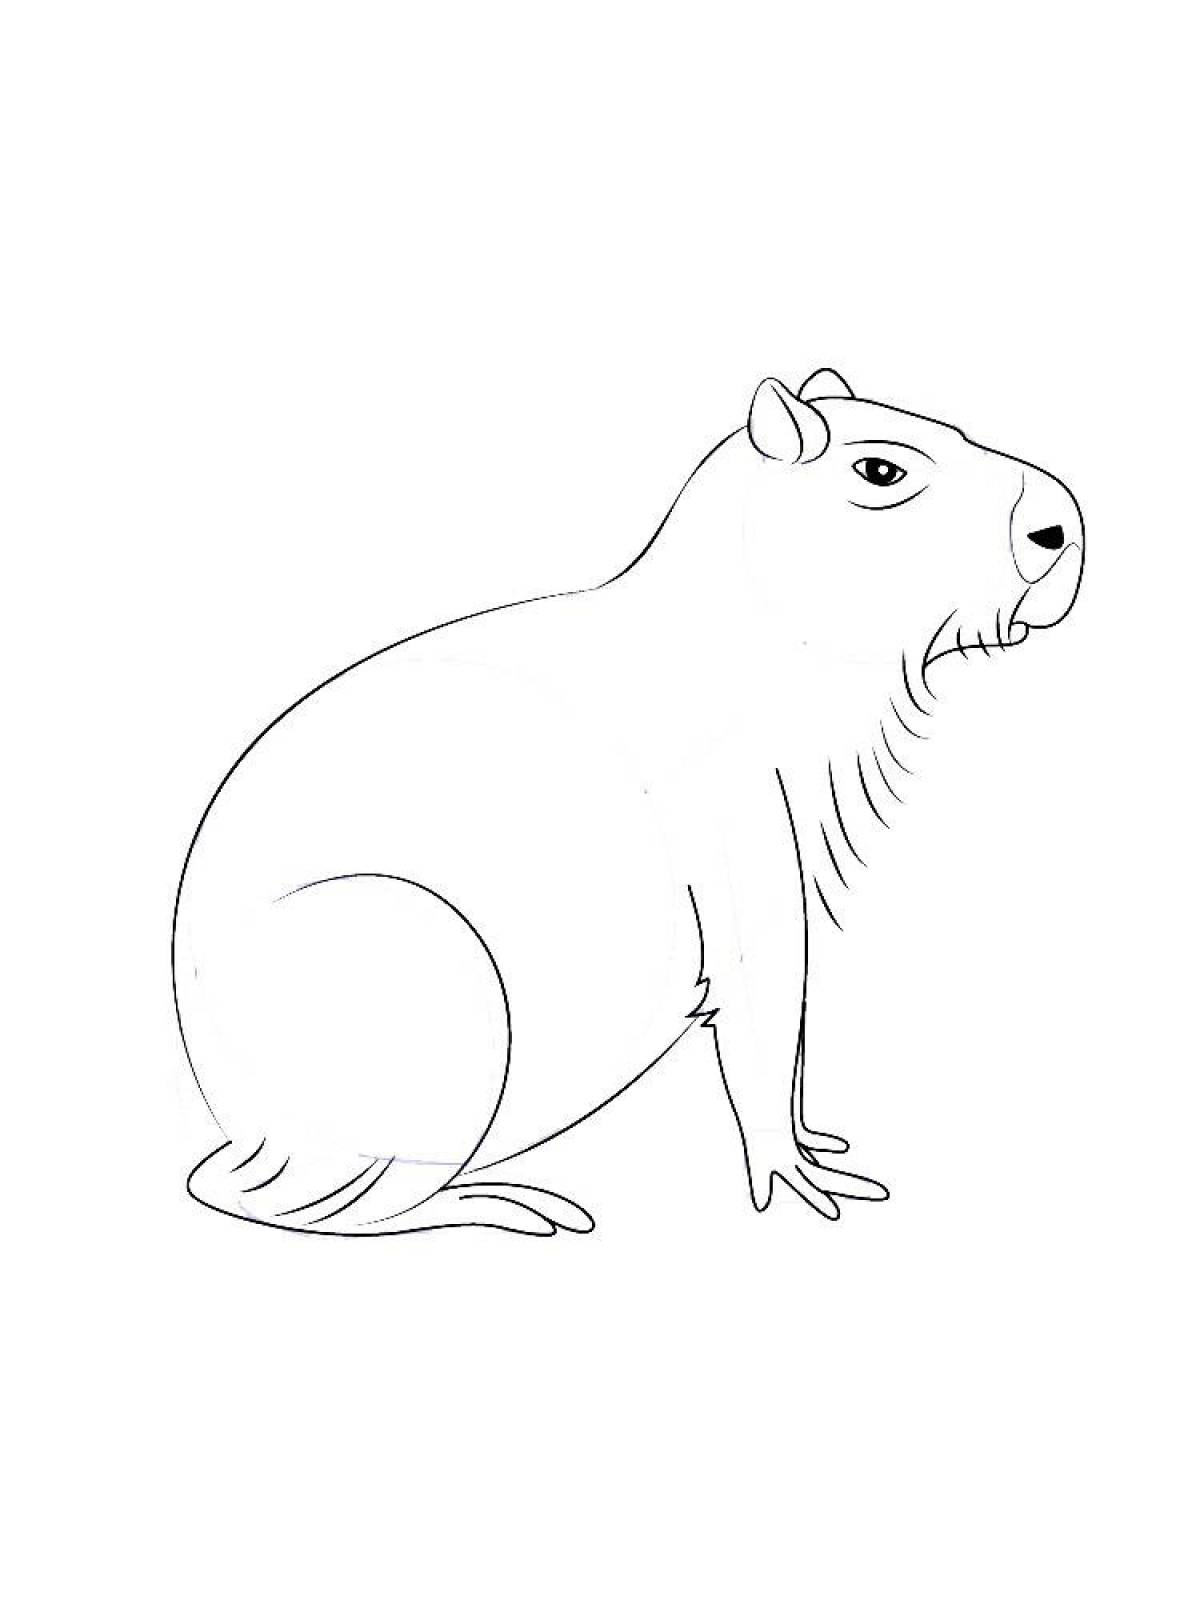 Capybara fun coloring book